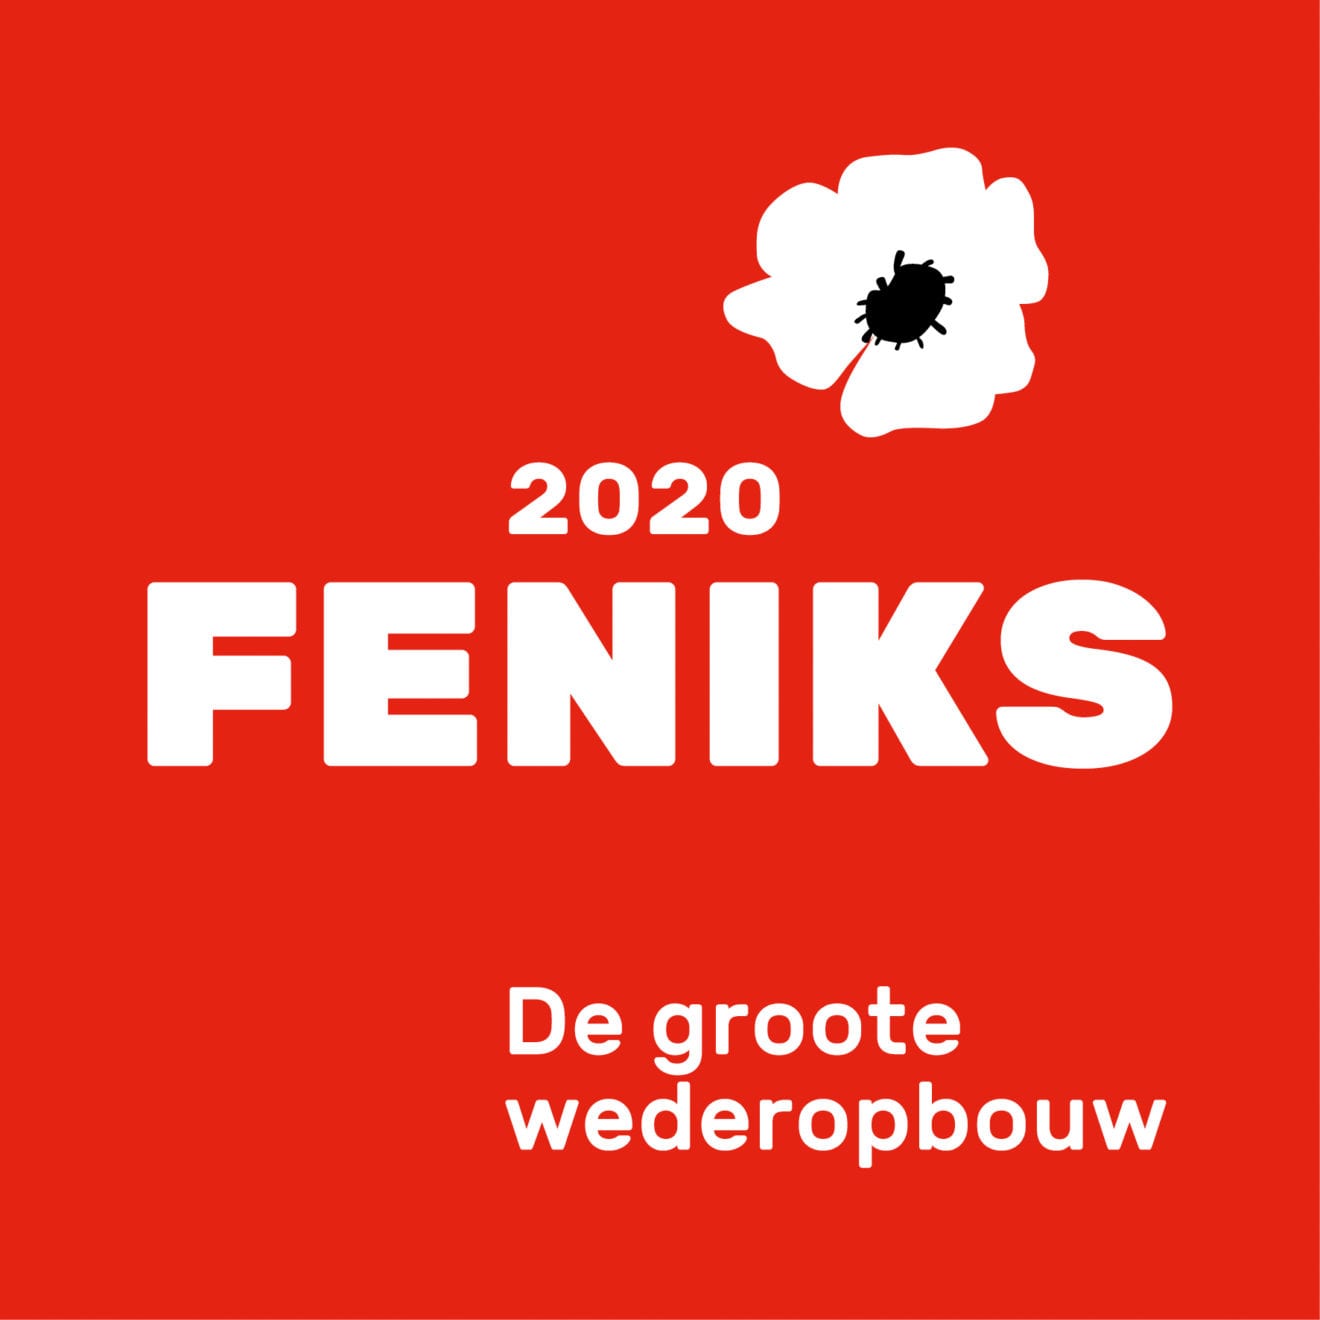 Feniks2020 logo